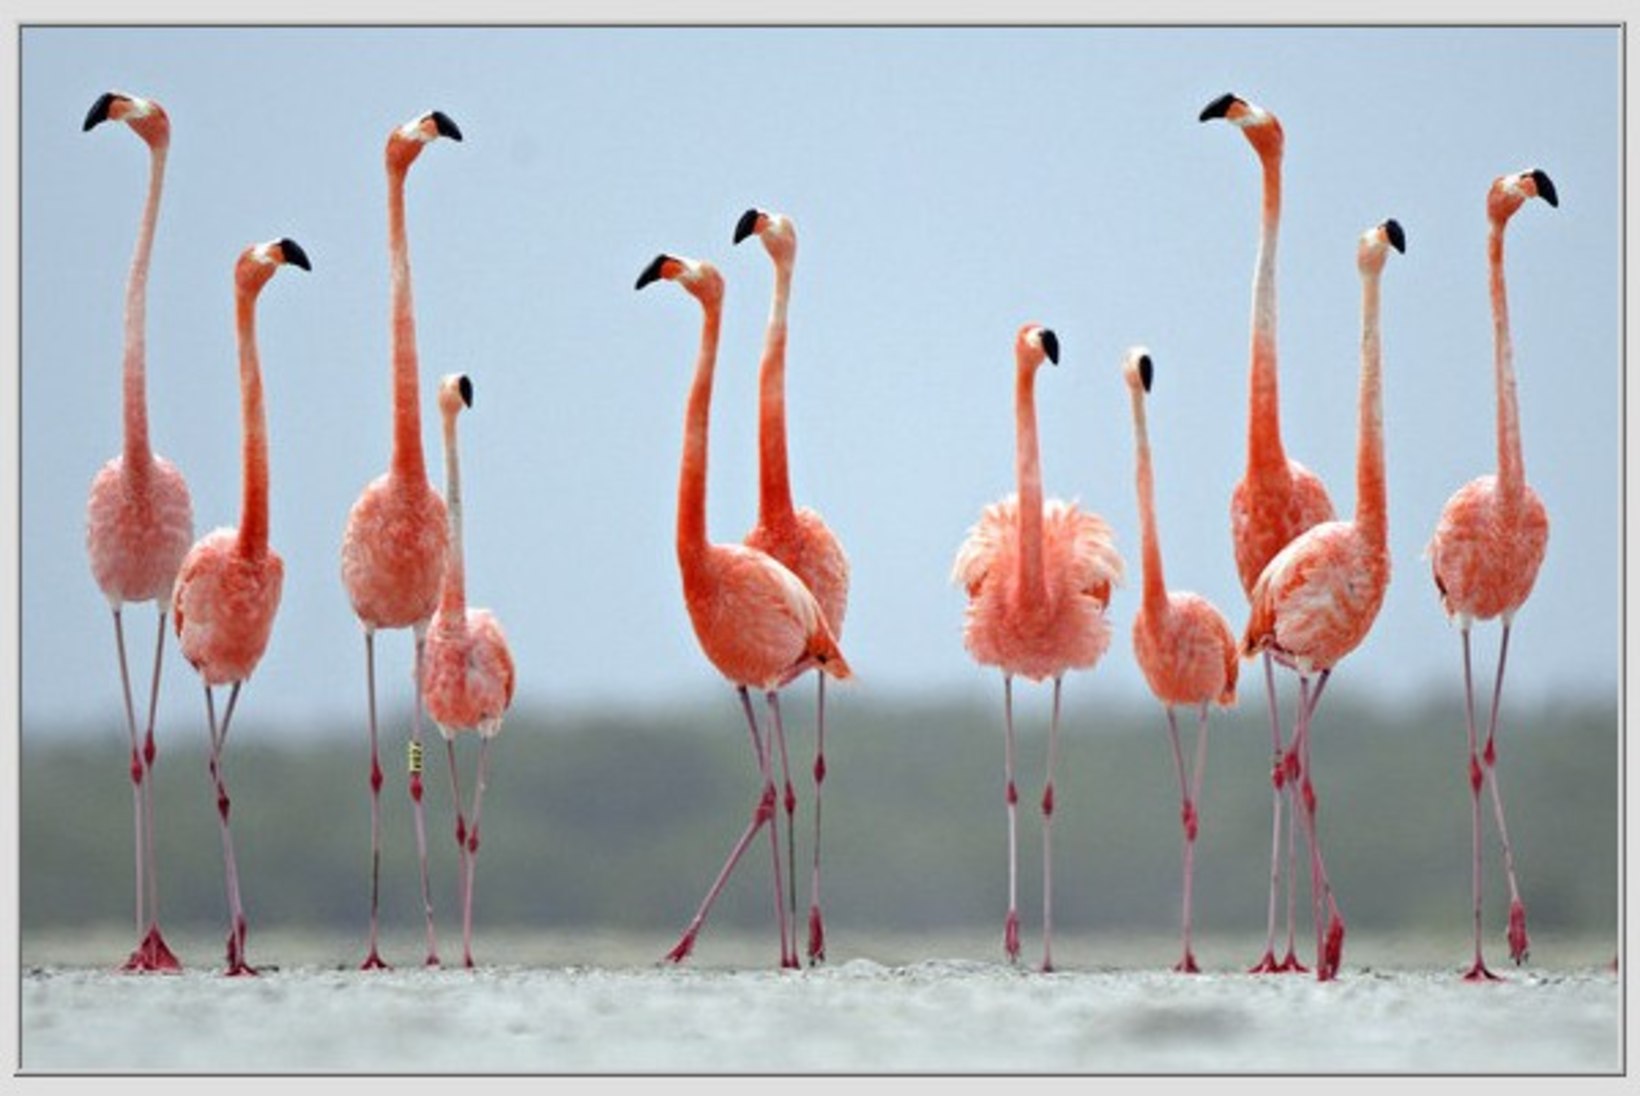 IMELINE VAATEPILT: flamingod moodustasid kujundi, mis meenutab südant